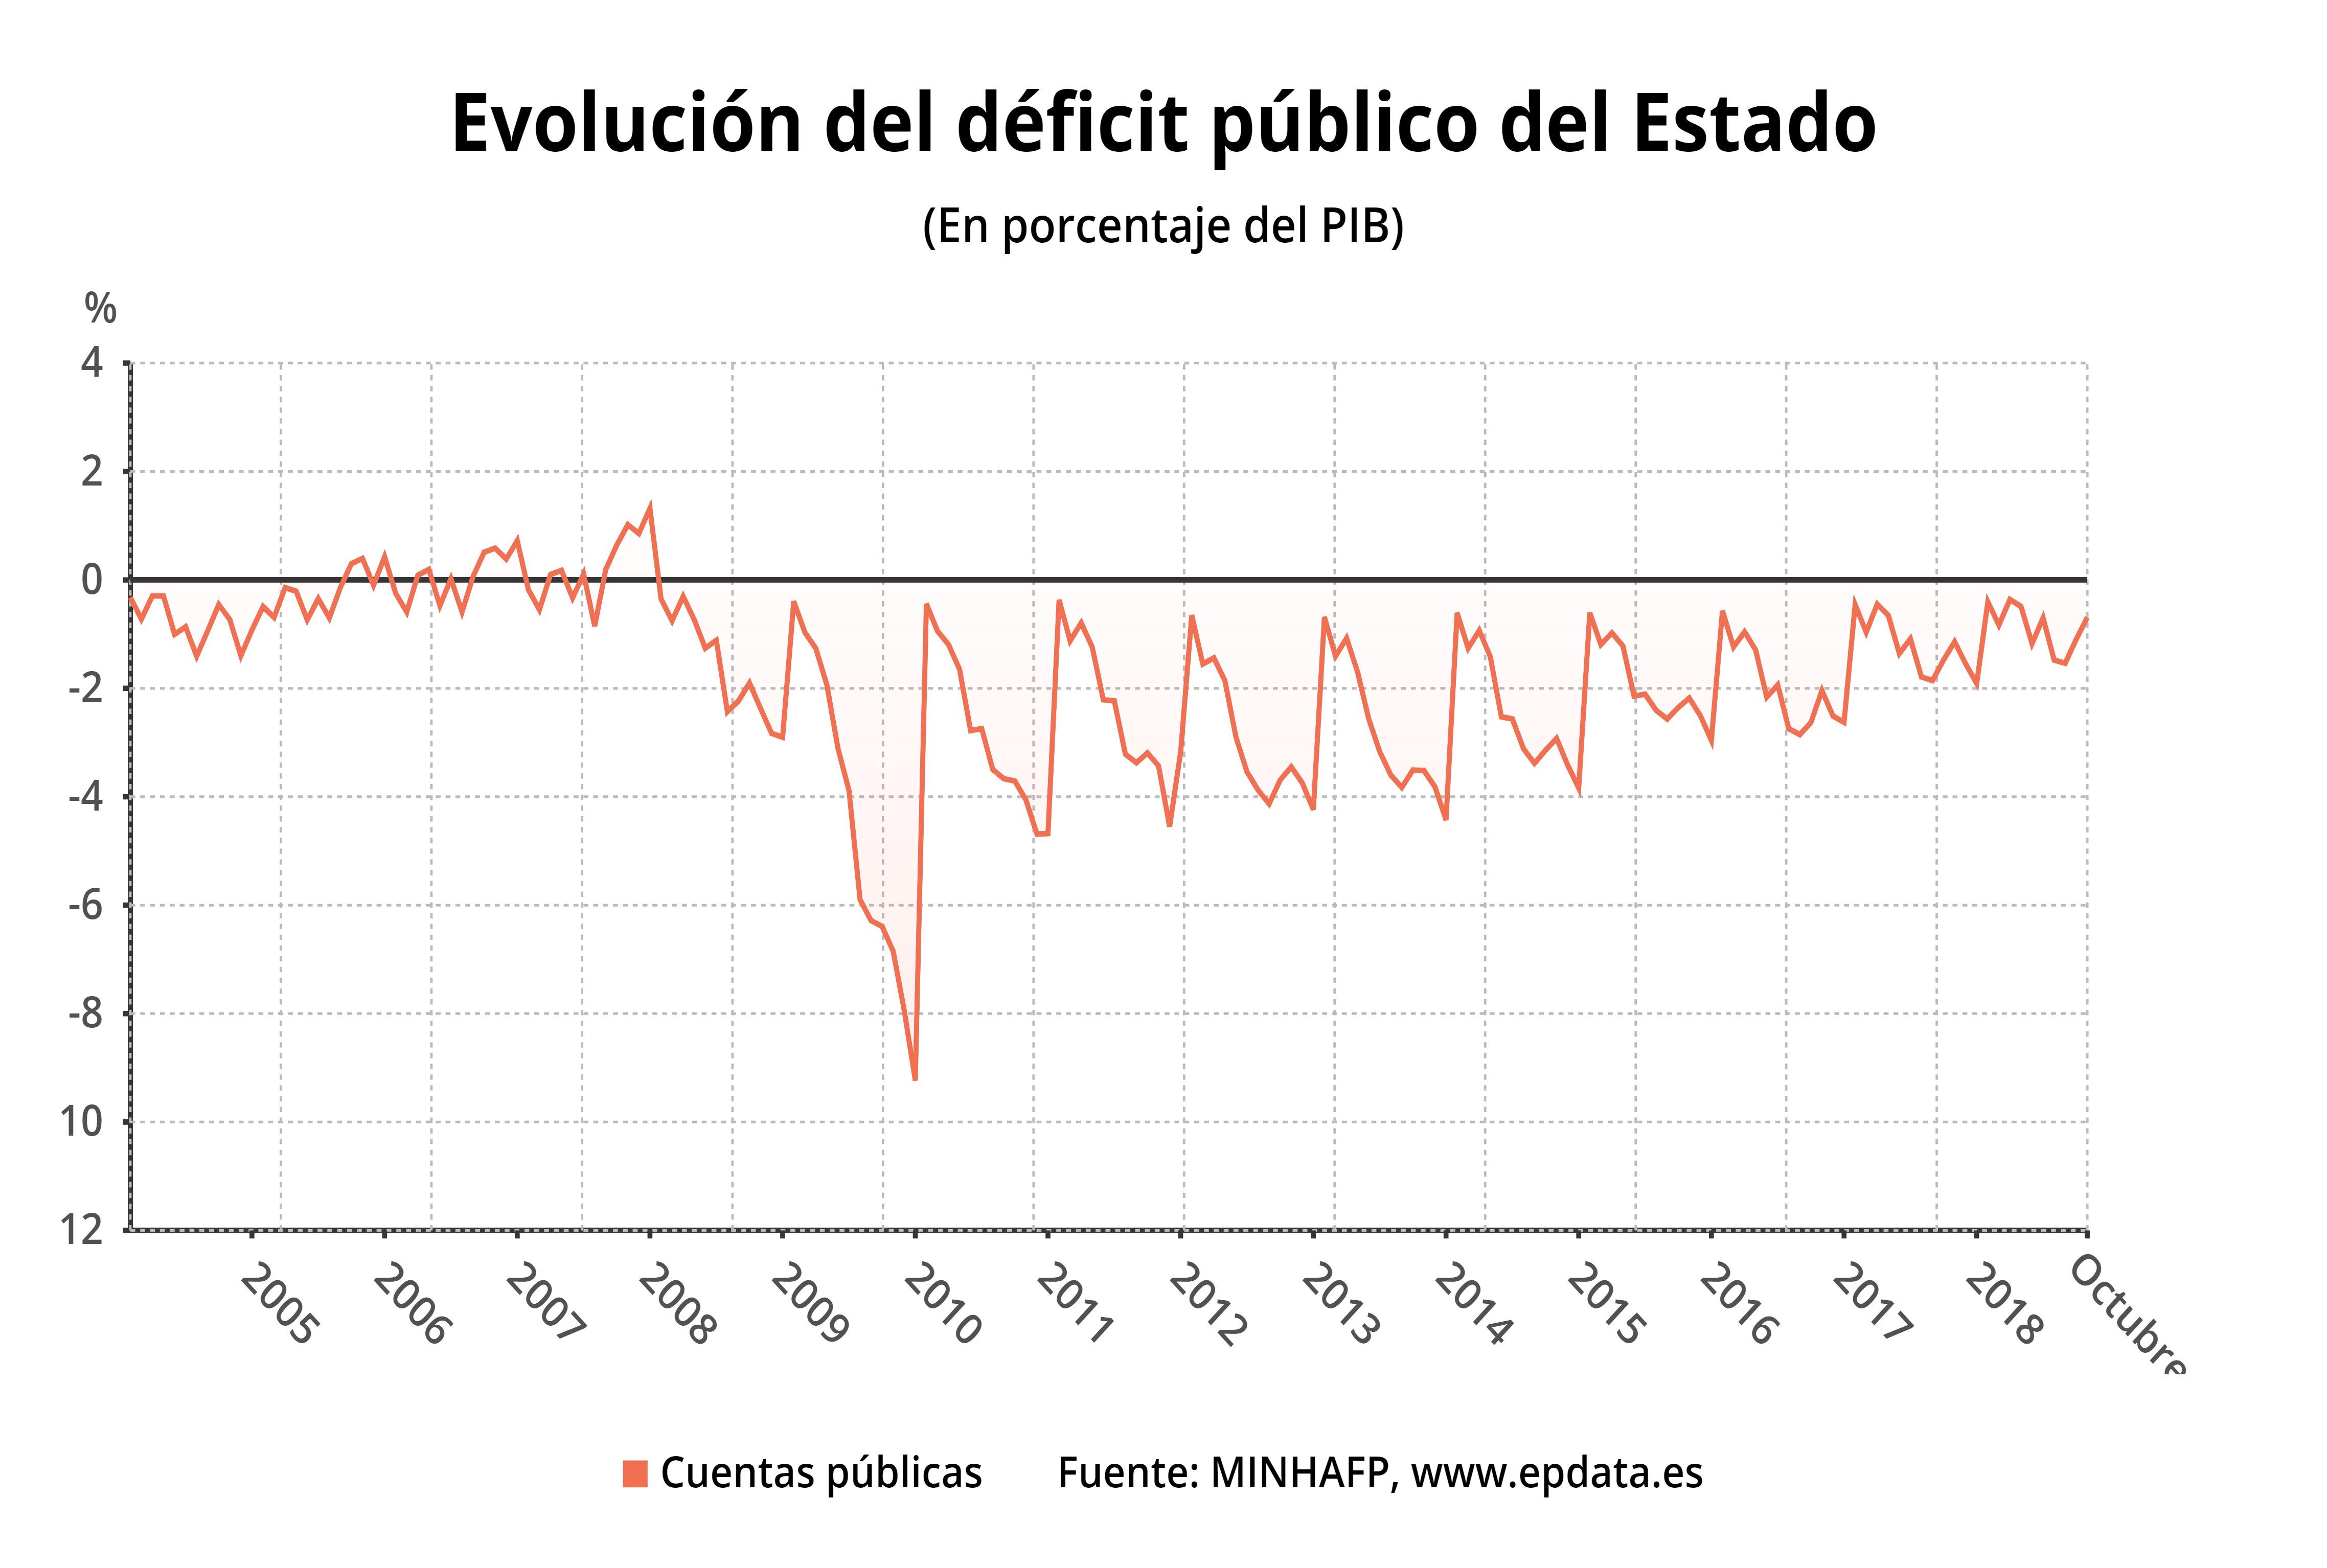 Evolucion del deficit publico del estado - Gráfico EP Data